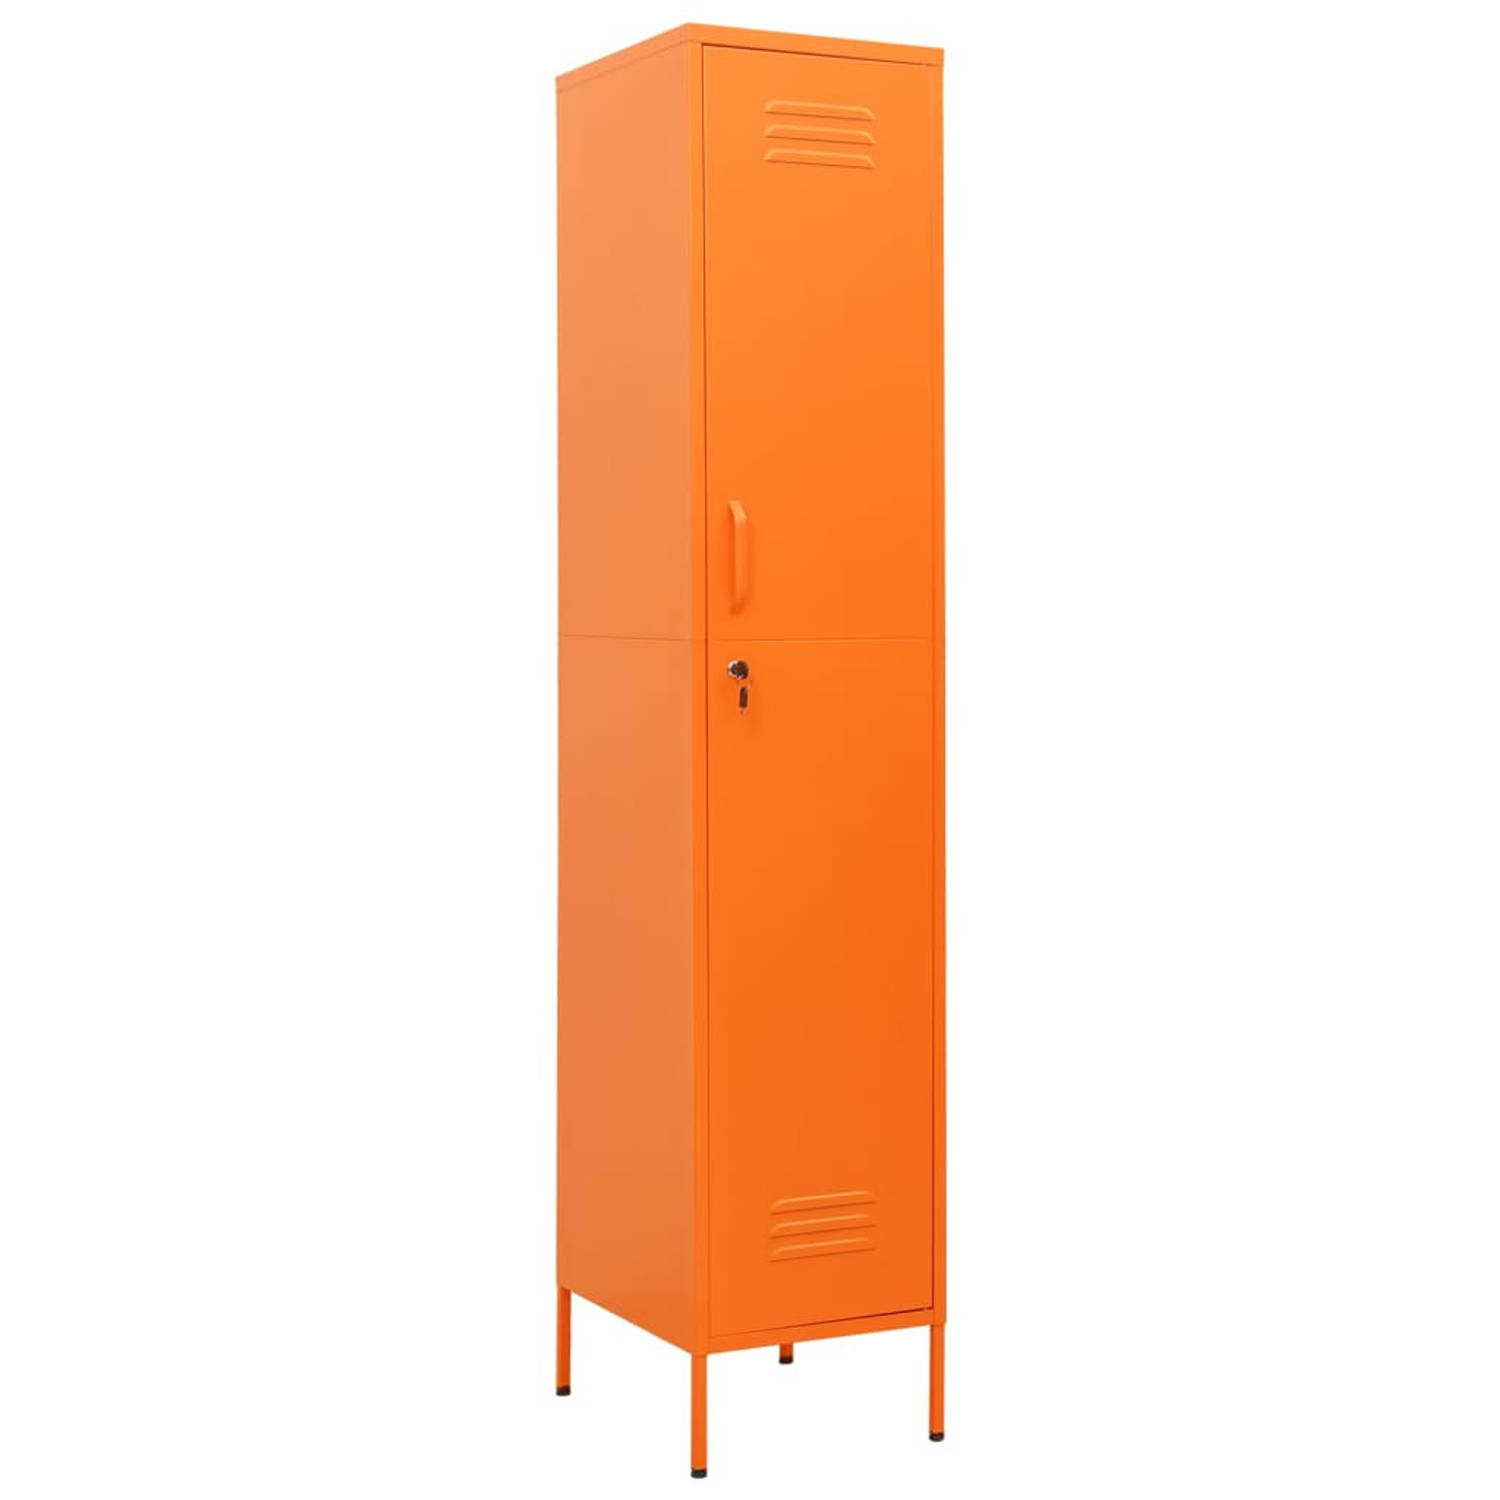 The Living Store lockerkast Oranje Staal - 35 x 46 x 180 cm - Inclusief slot - Verstelbare schappen - Draagvermogen 40 kg - Montage vereist